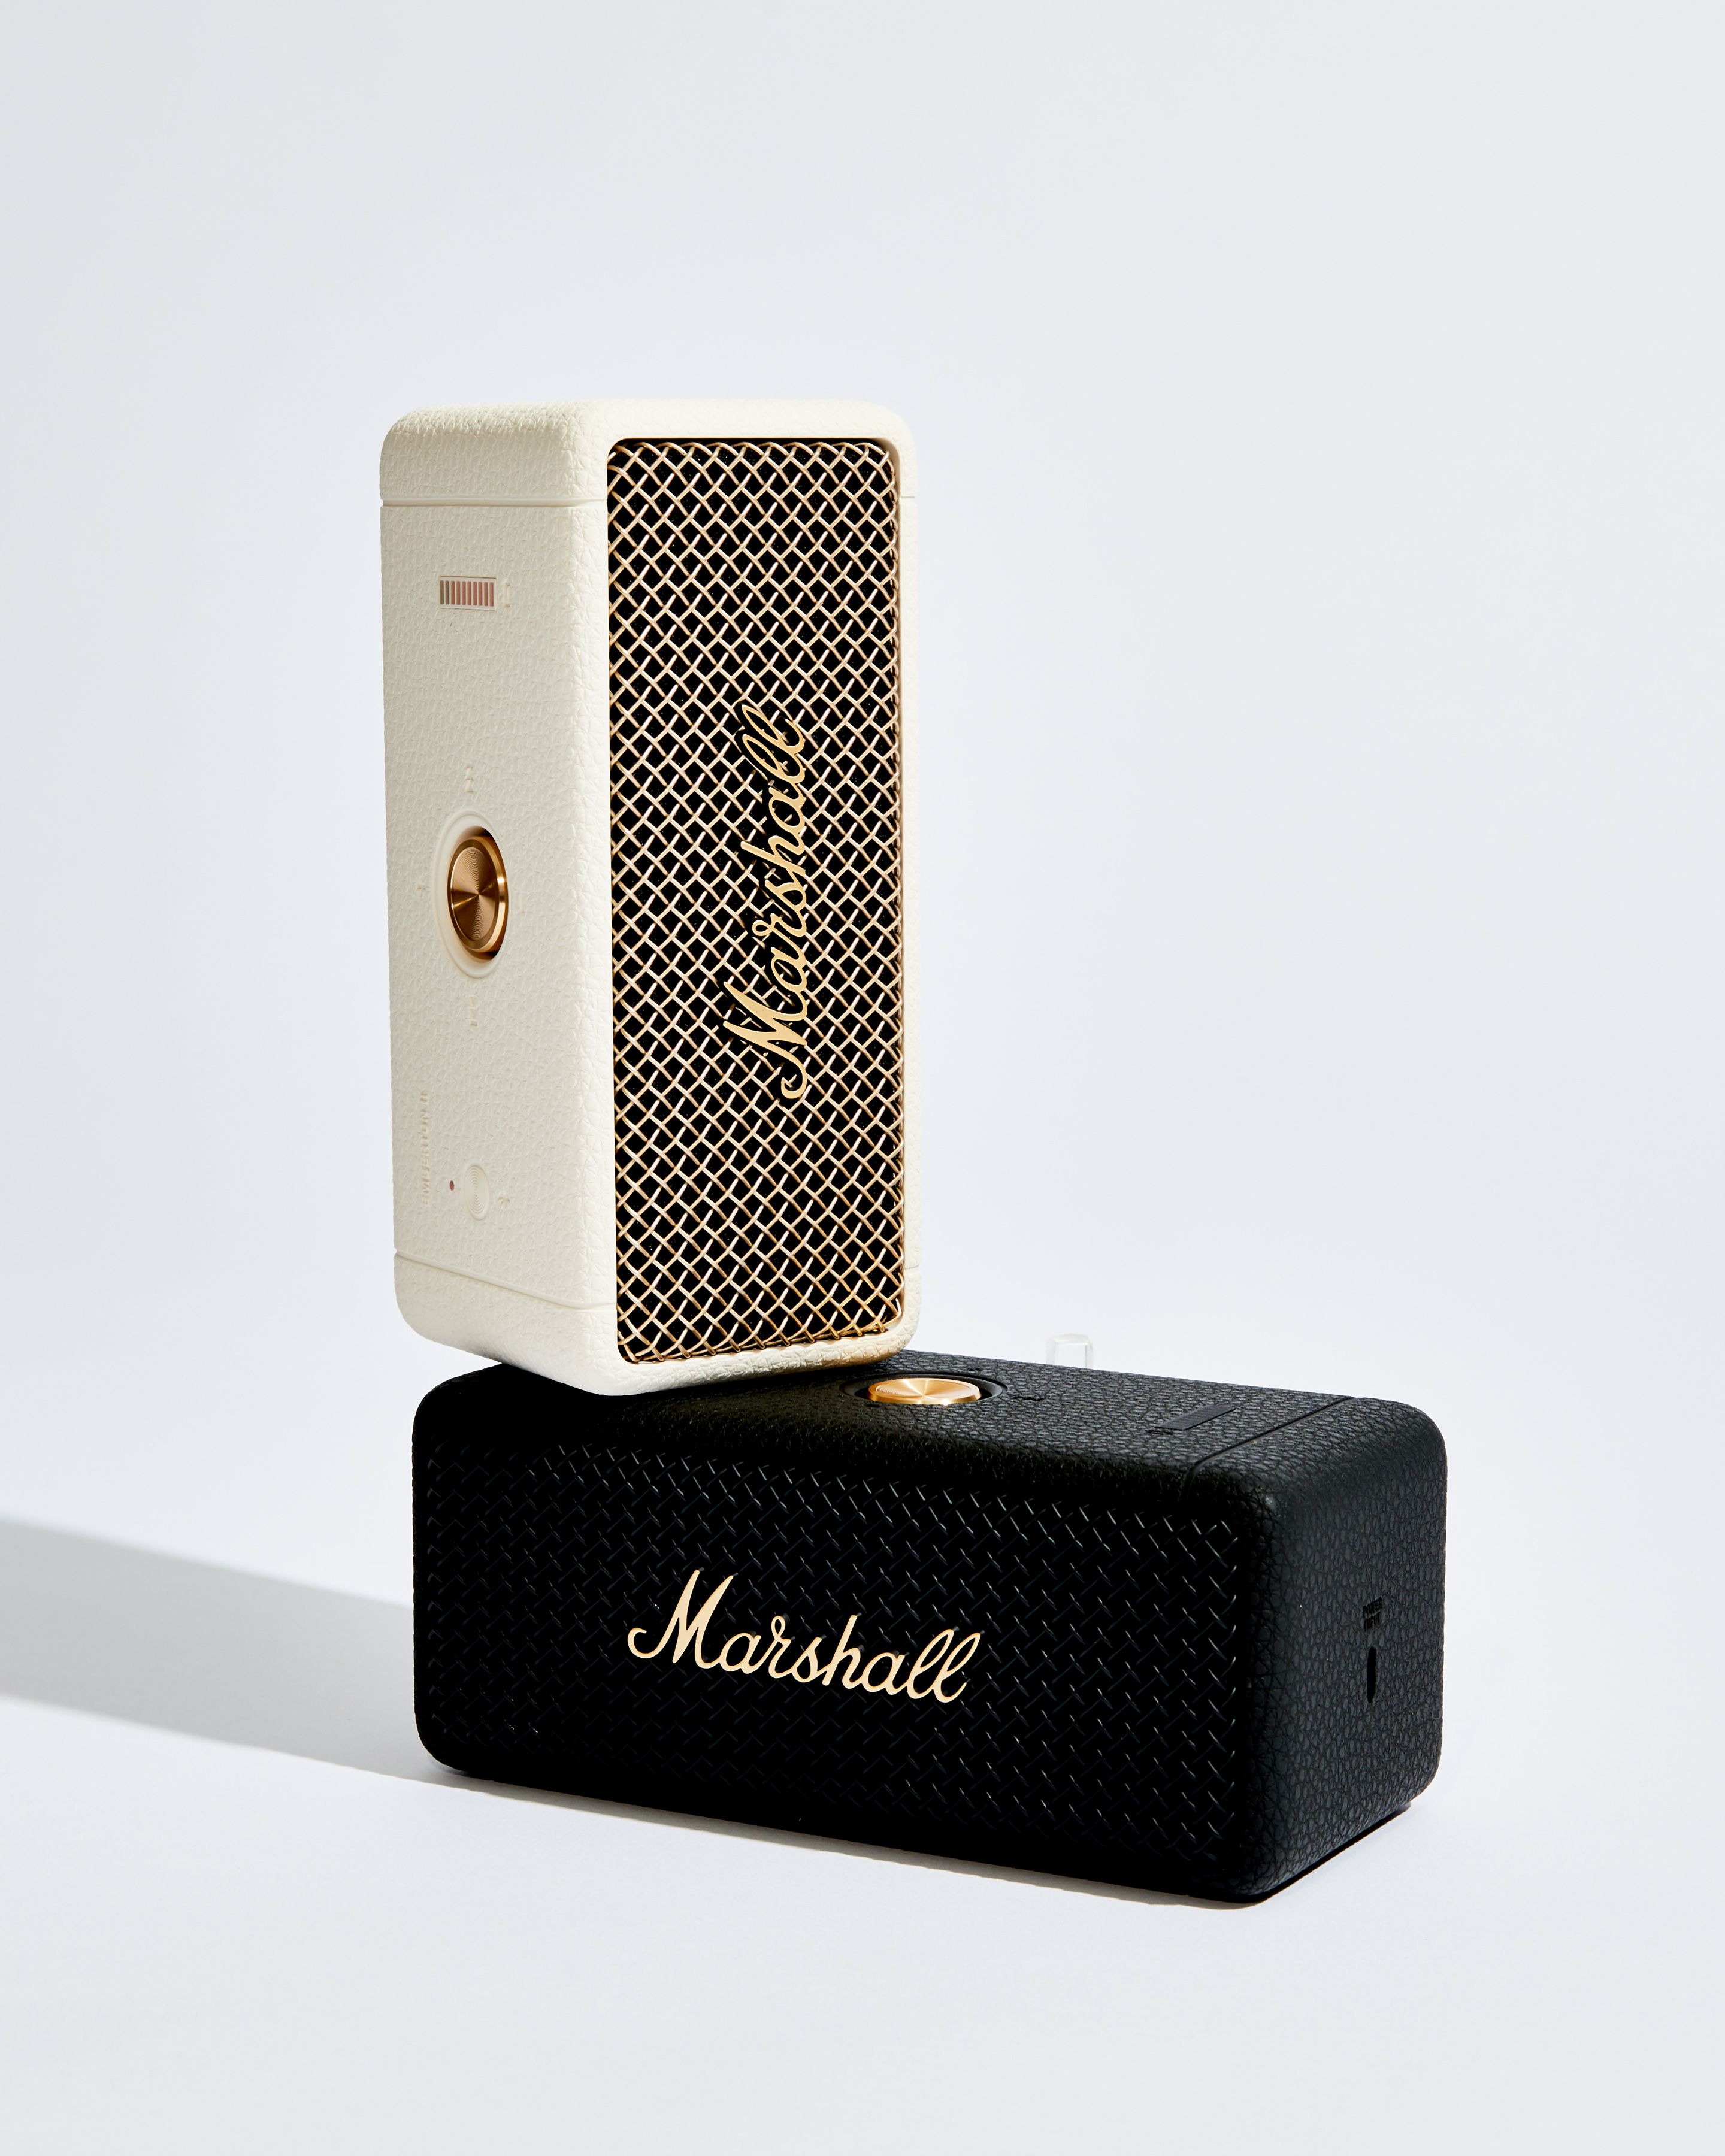 Marshall Lifestyle Emberton Bluetooth Speaker